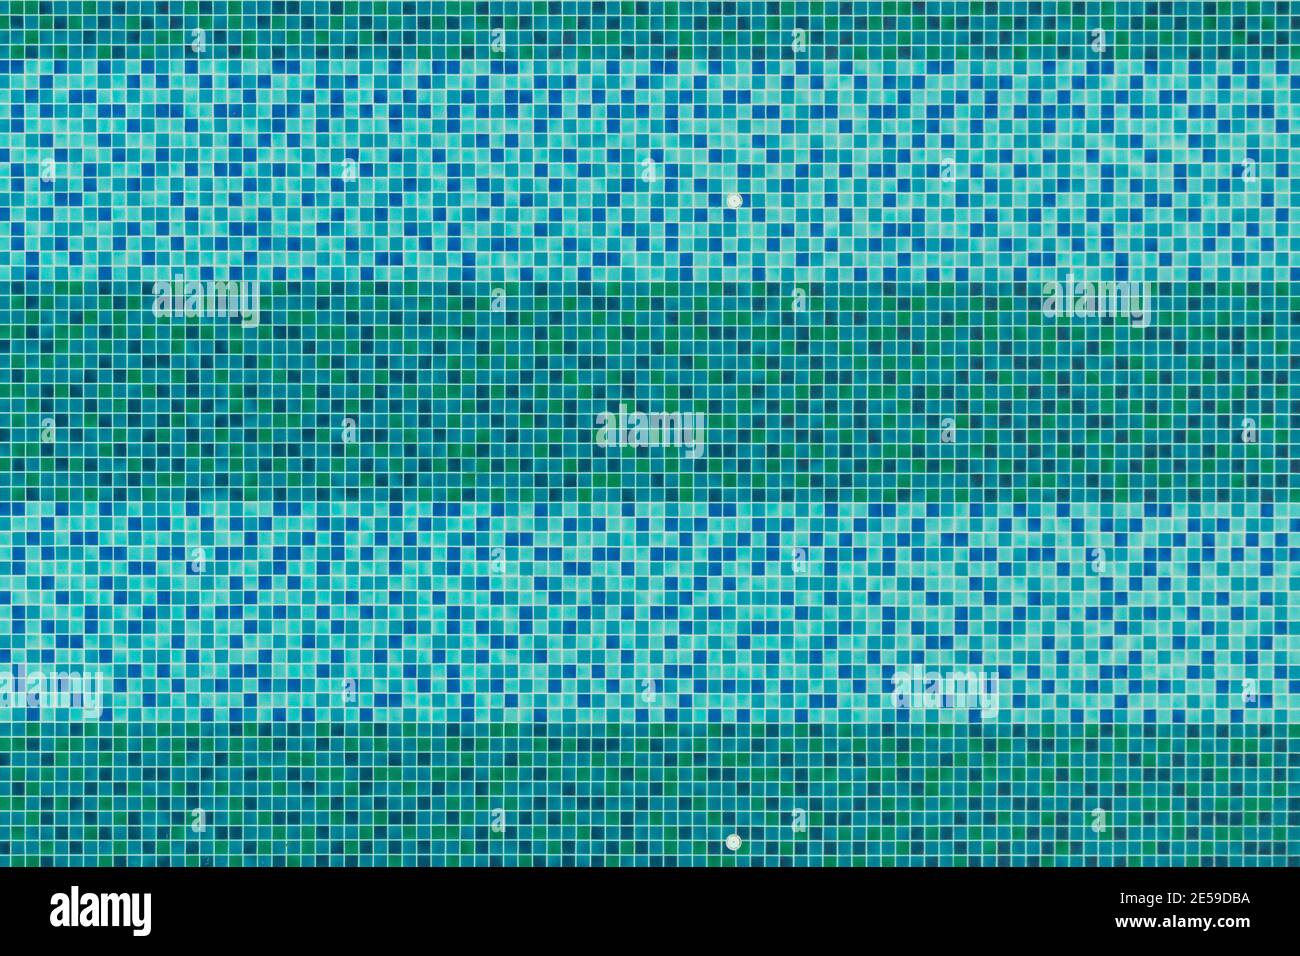 Piscine vue de dessus arrière-plan, mosaïque de carreaux de céramique bleu et vert d'Acas dans la piscine. Banque D'Images